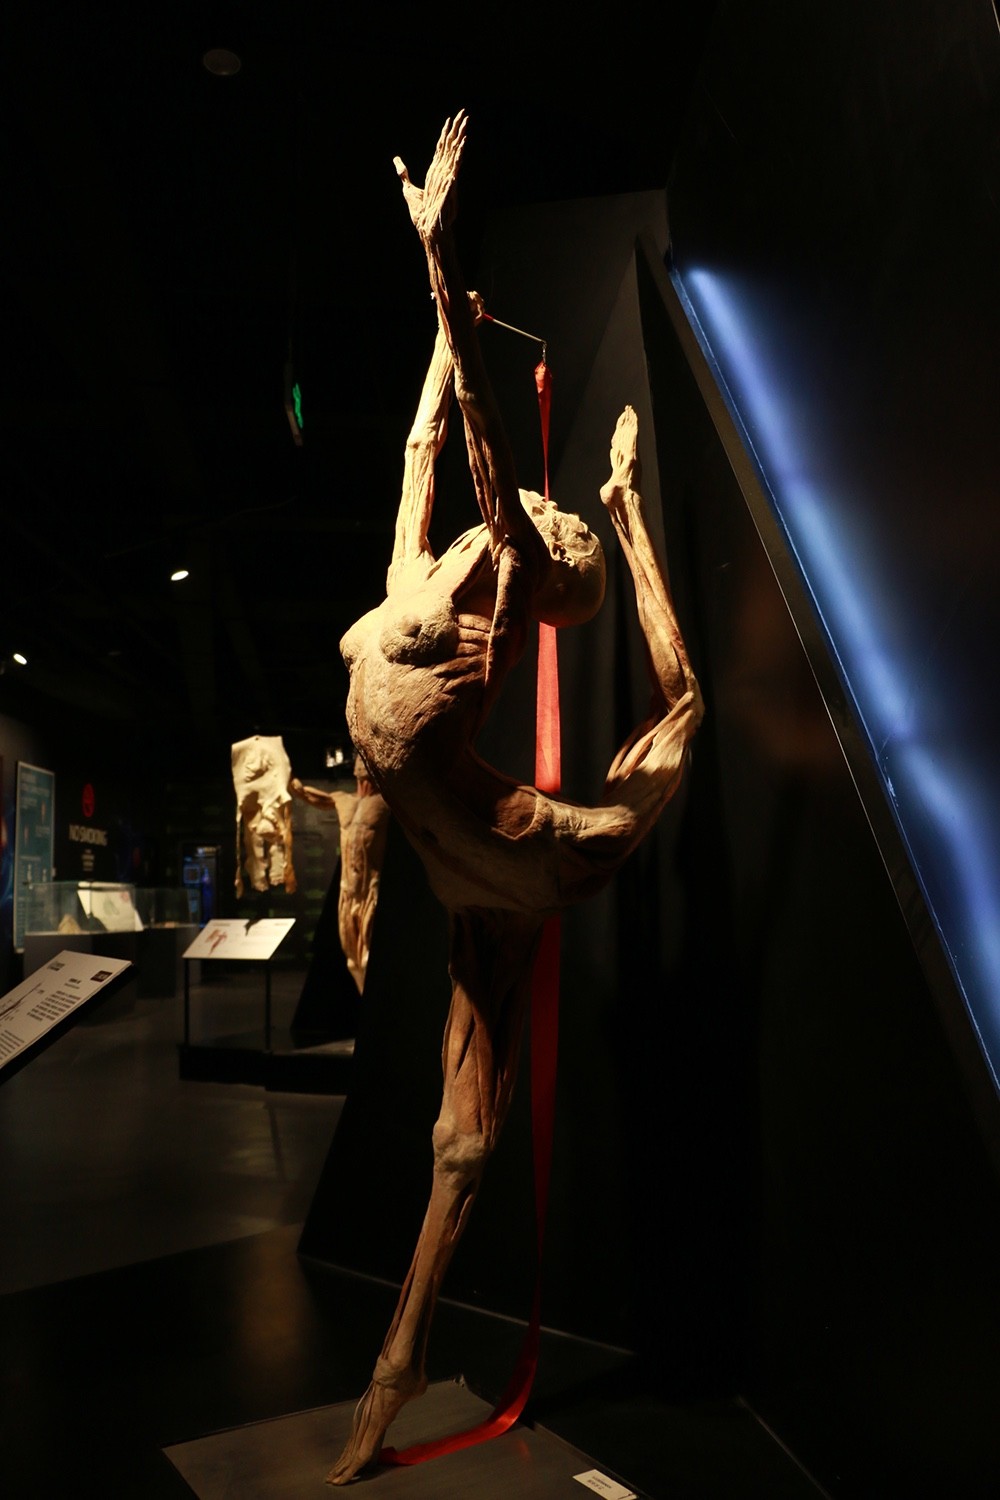 北京人体博物馆 身体图片